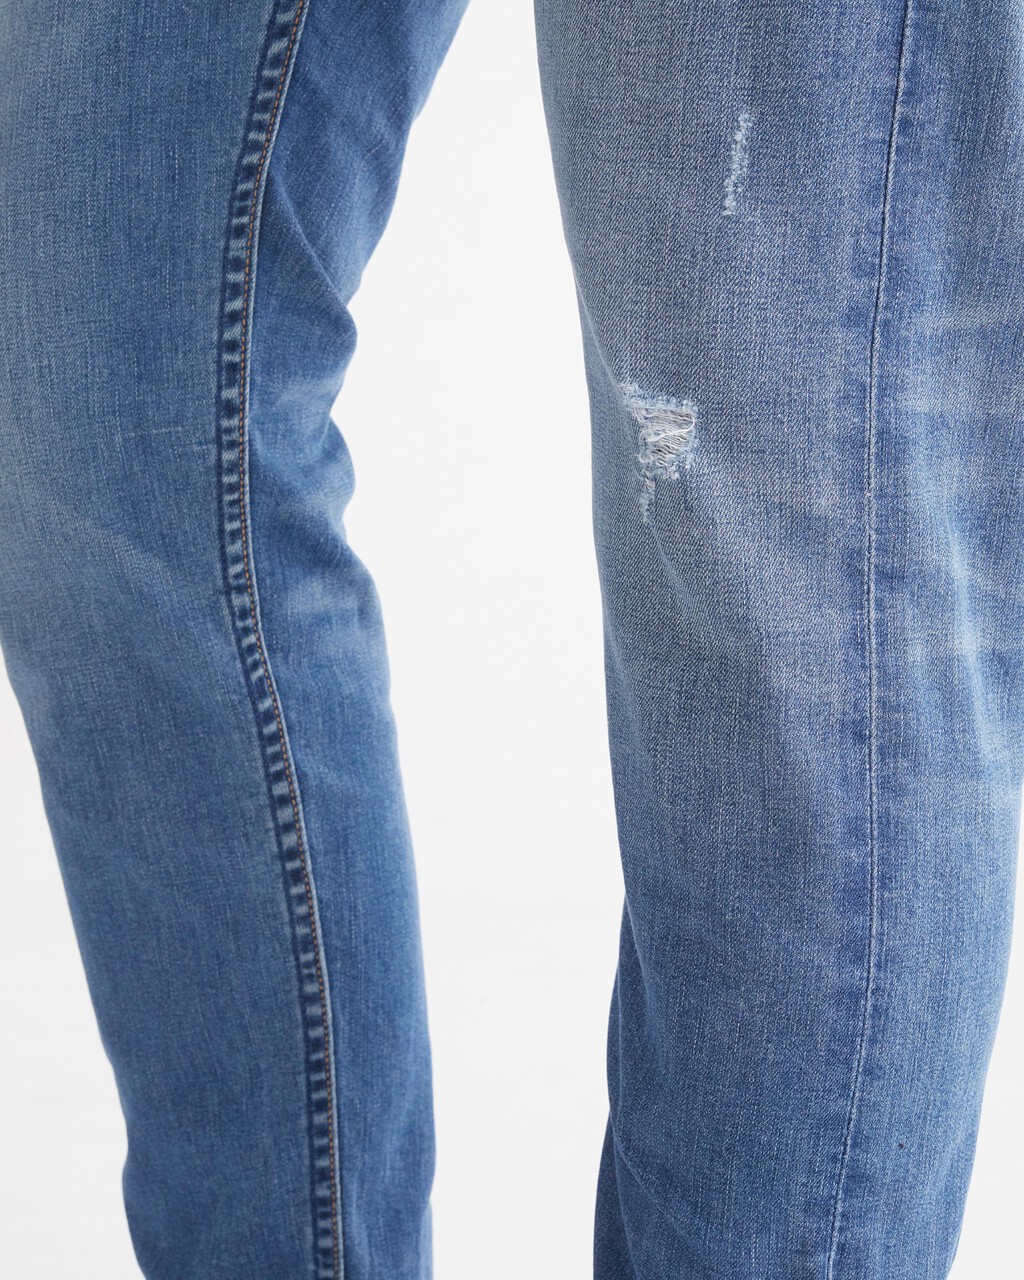 37.5 Distressed Modern Taper Jeans, Mid Blue Dstr, hi-res